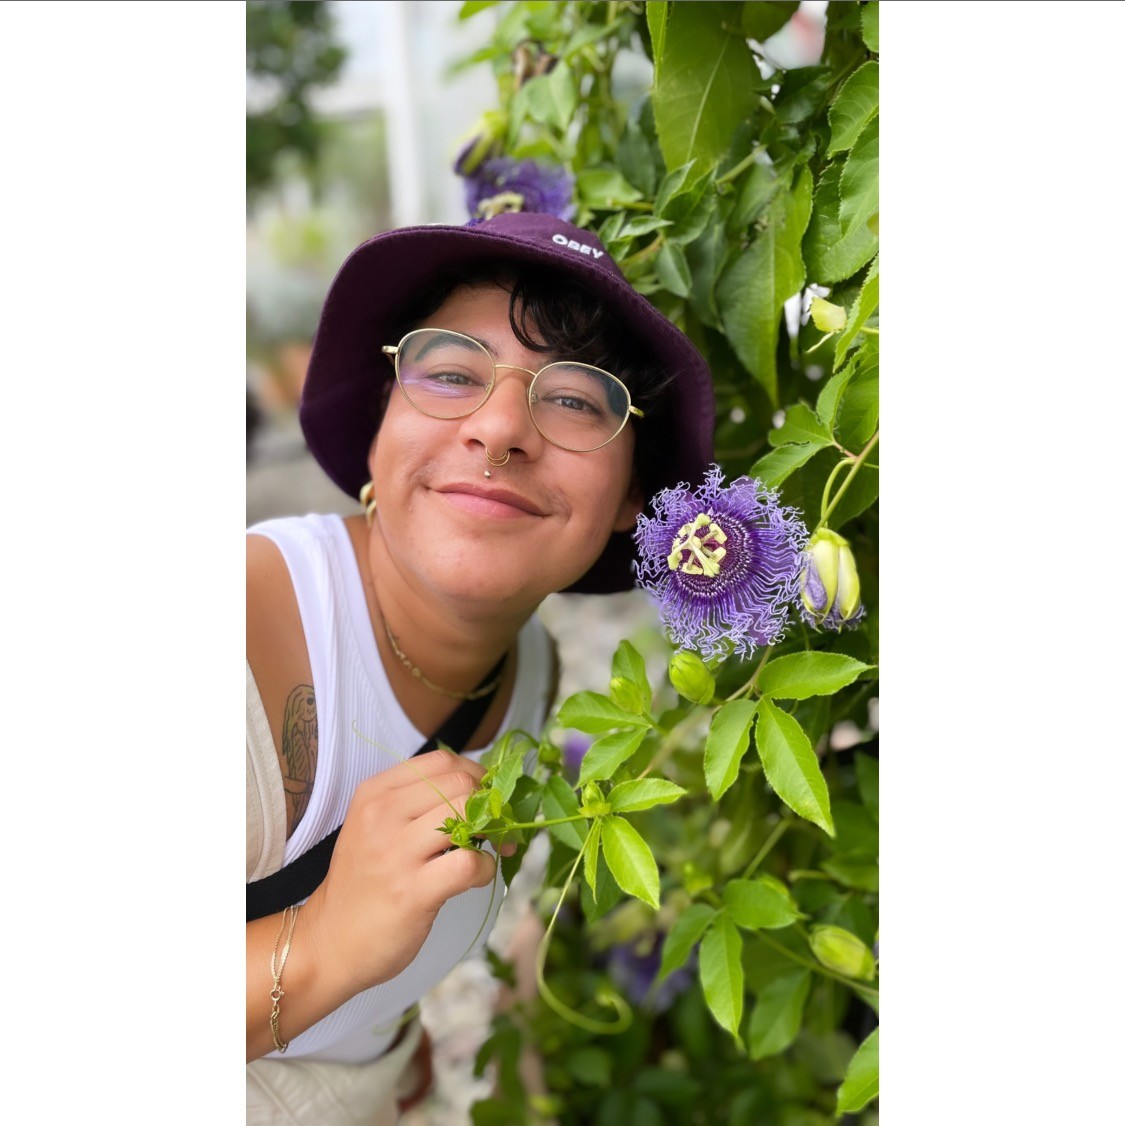 Pao Lebrón smiles next to a purple flower growing on a vine, wearing a purple bucket hat